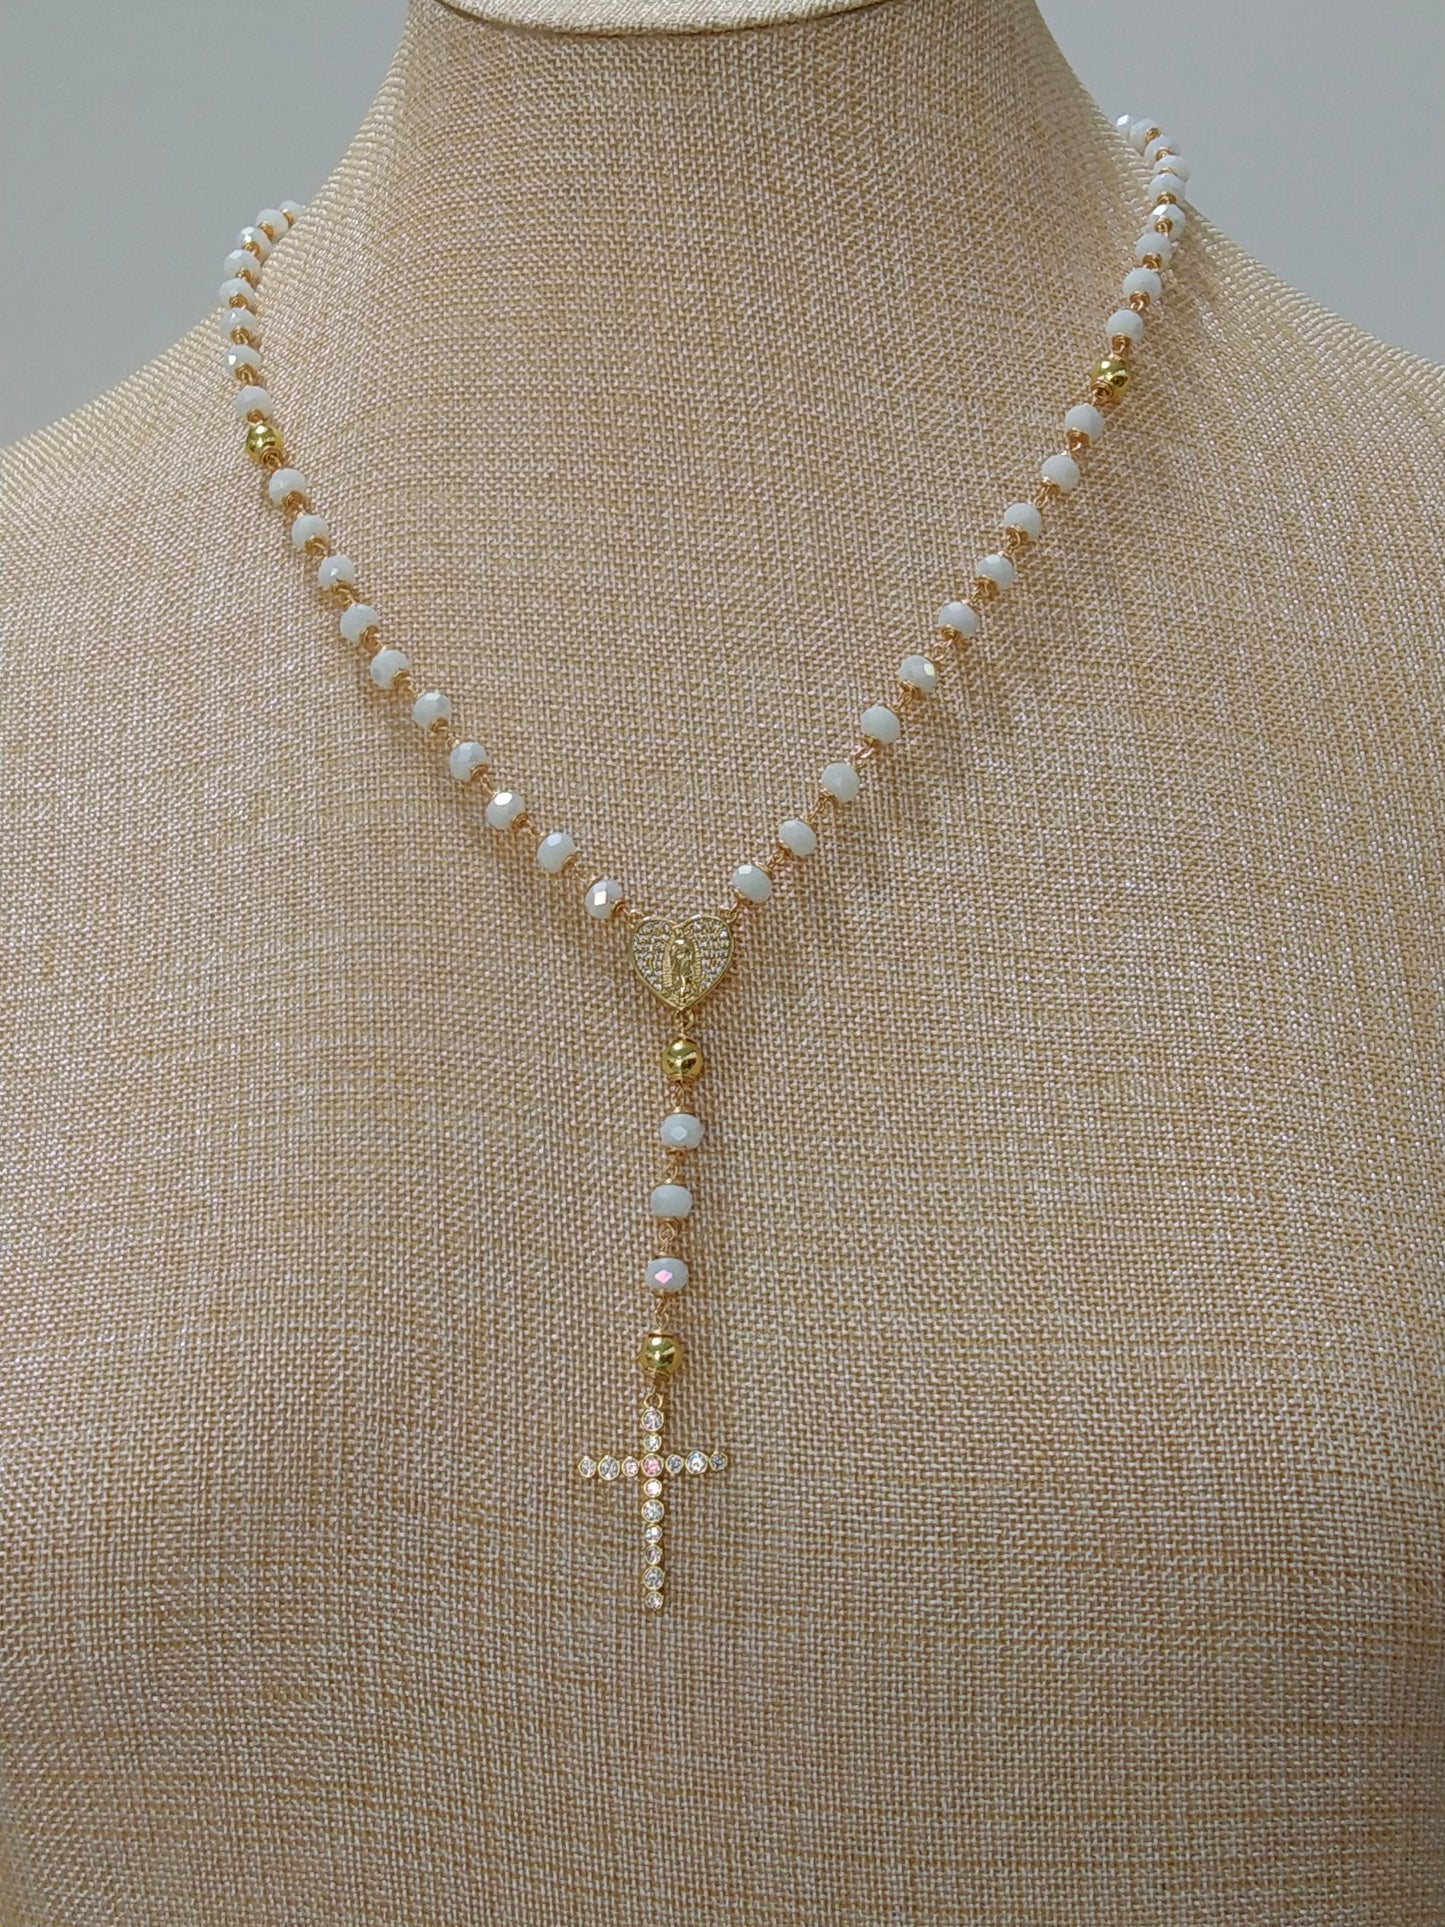 Rosario de cristales con corazón de la Virgen de Guadalupe - Un regalo lleno de amor y fe